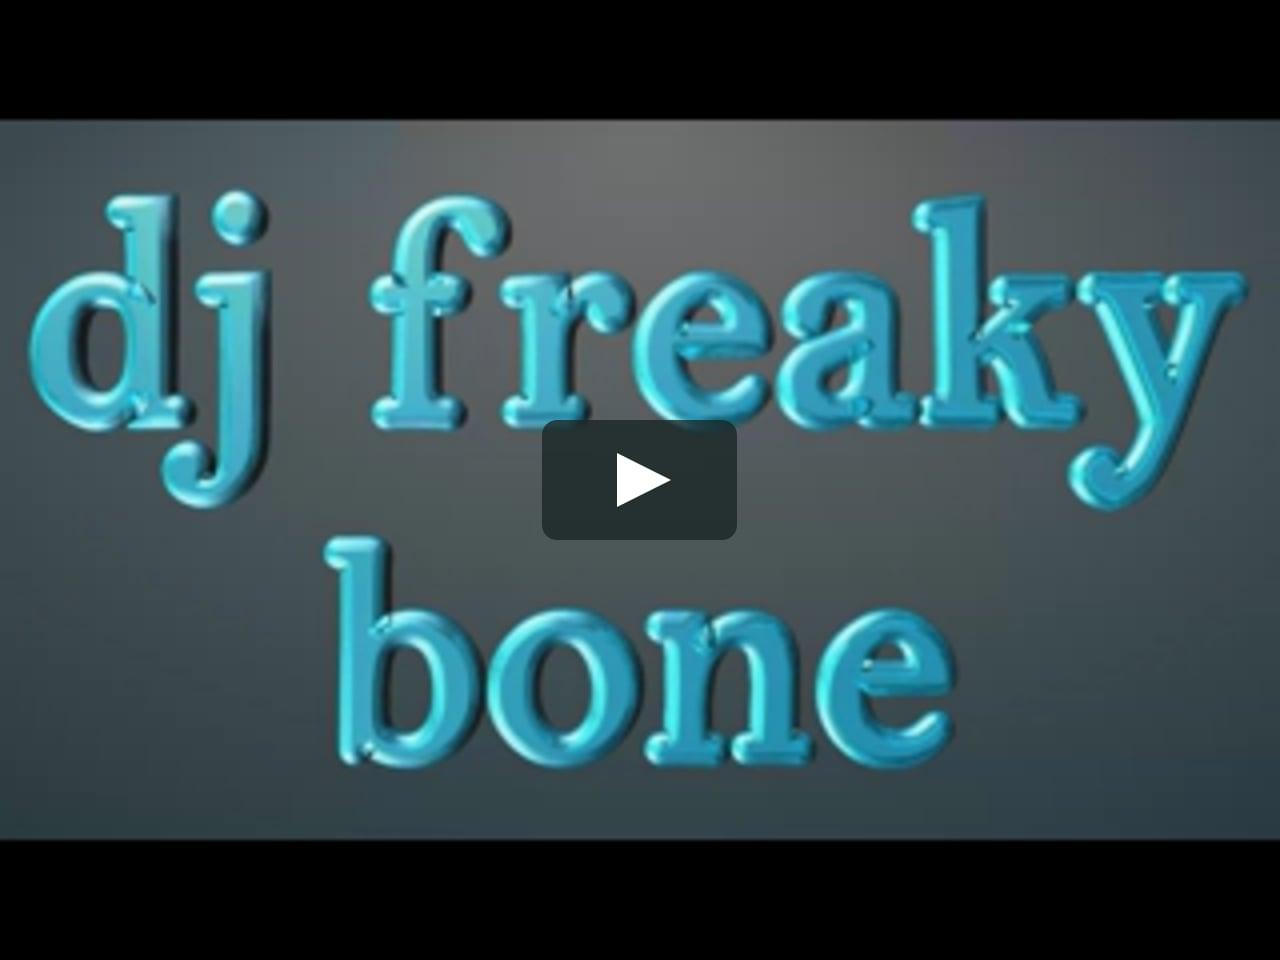 Freaky Logo - freaky logo x264 on Vimeo